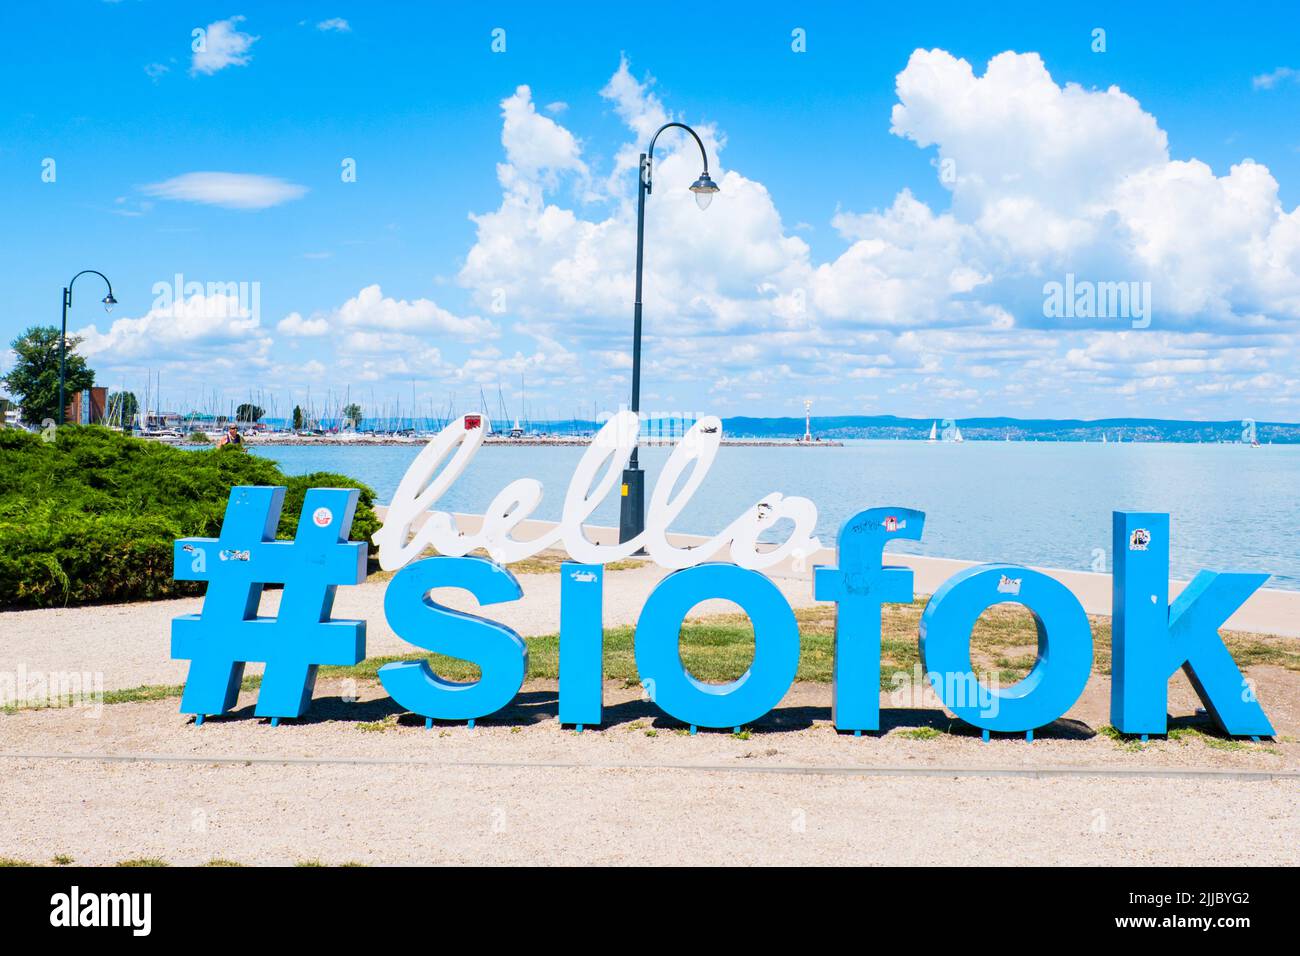 Hello Siofok sign, Plazs Siofok, Isztria setany, Siofok, Hungary Stock Photo